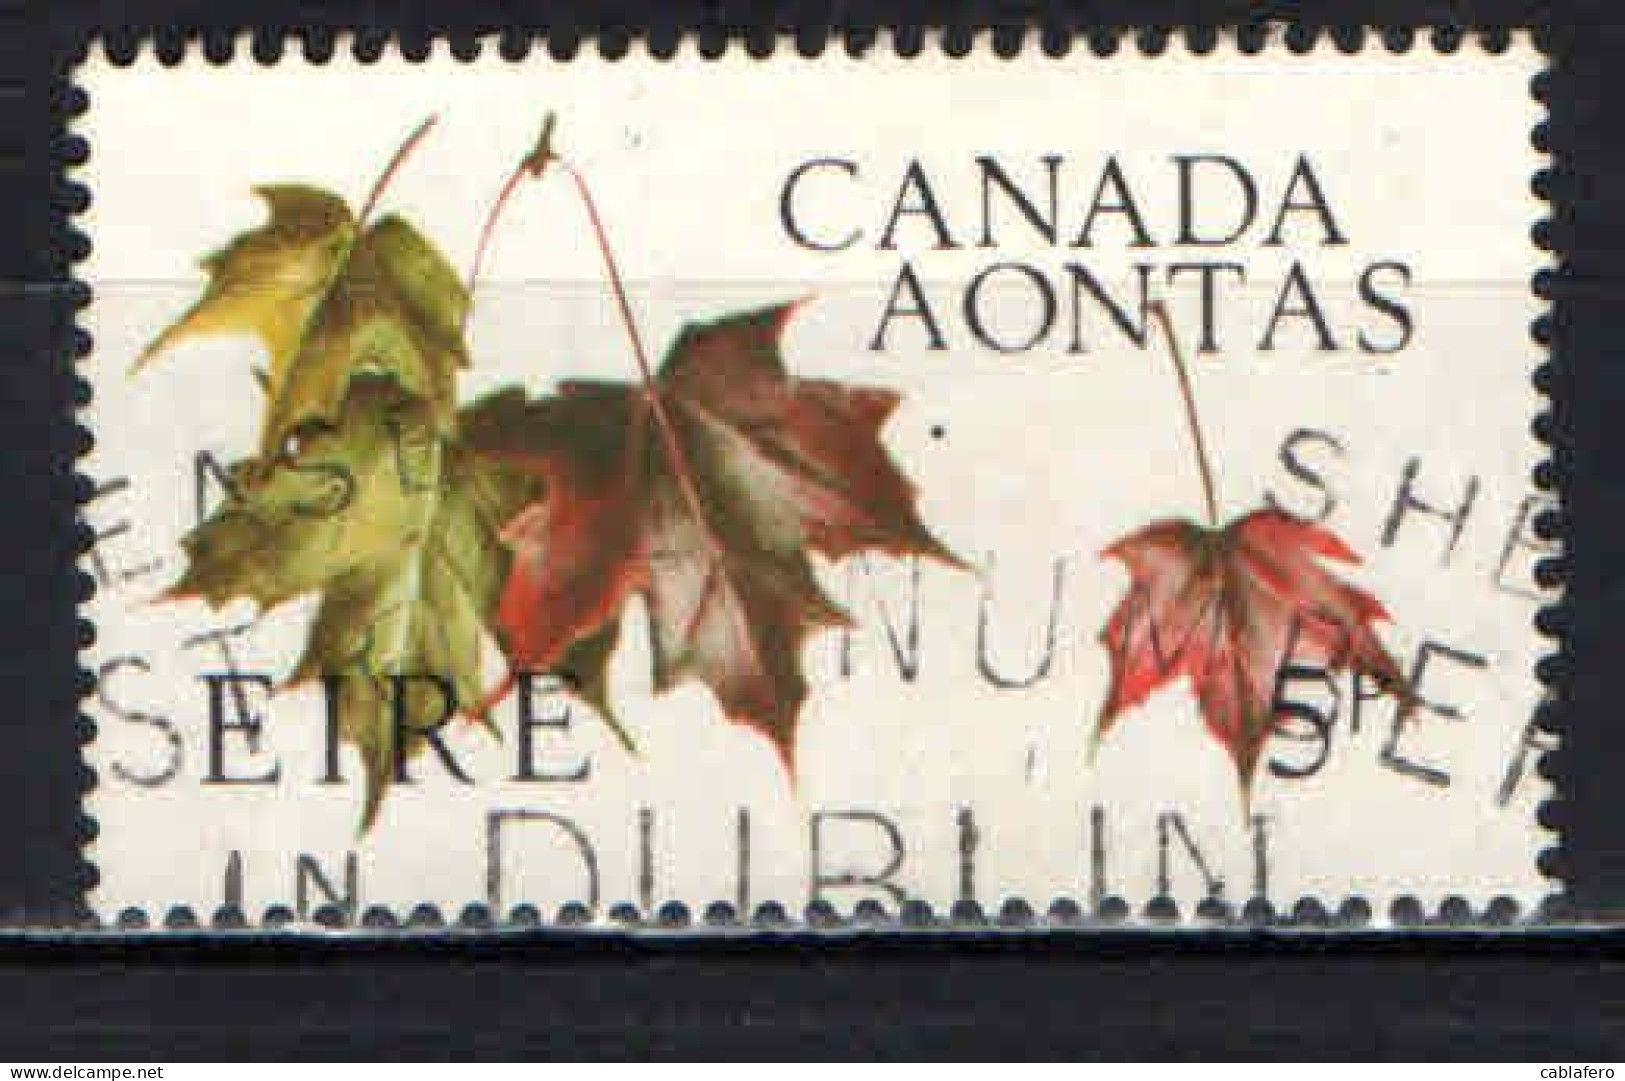 IRLANDA - 1967 - CENTENARIO DELLA FEDERAZIONE CANADESE - FOGLIE D'ACERO - USATO - Used Stamps